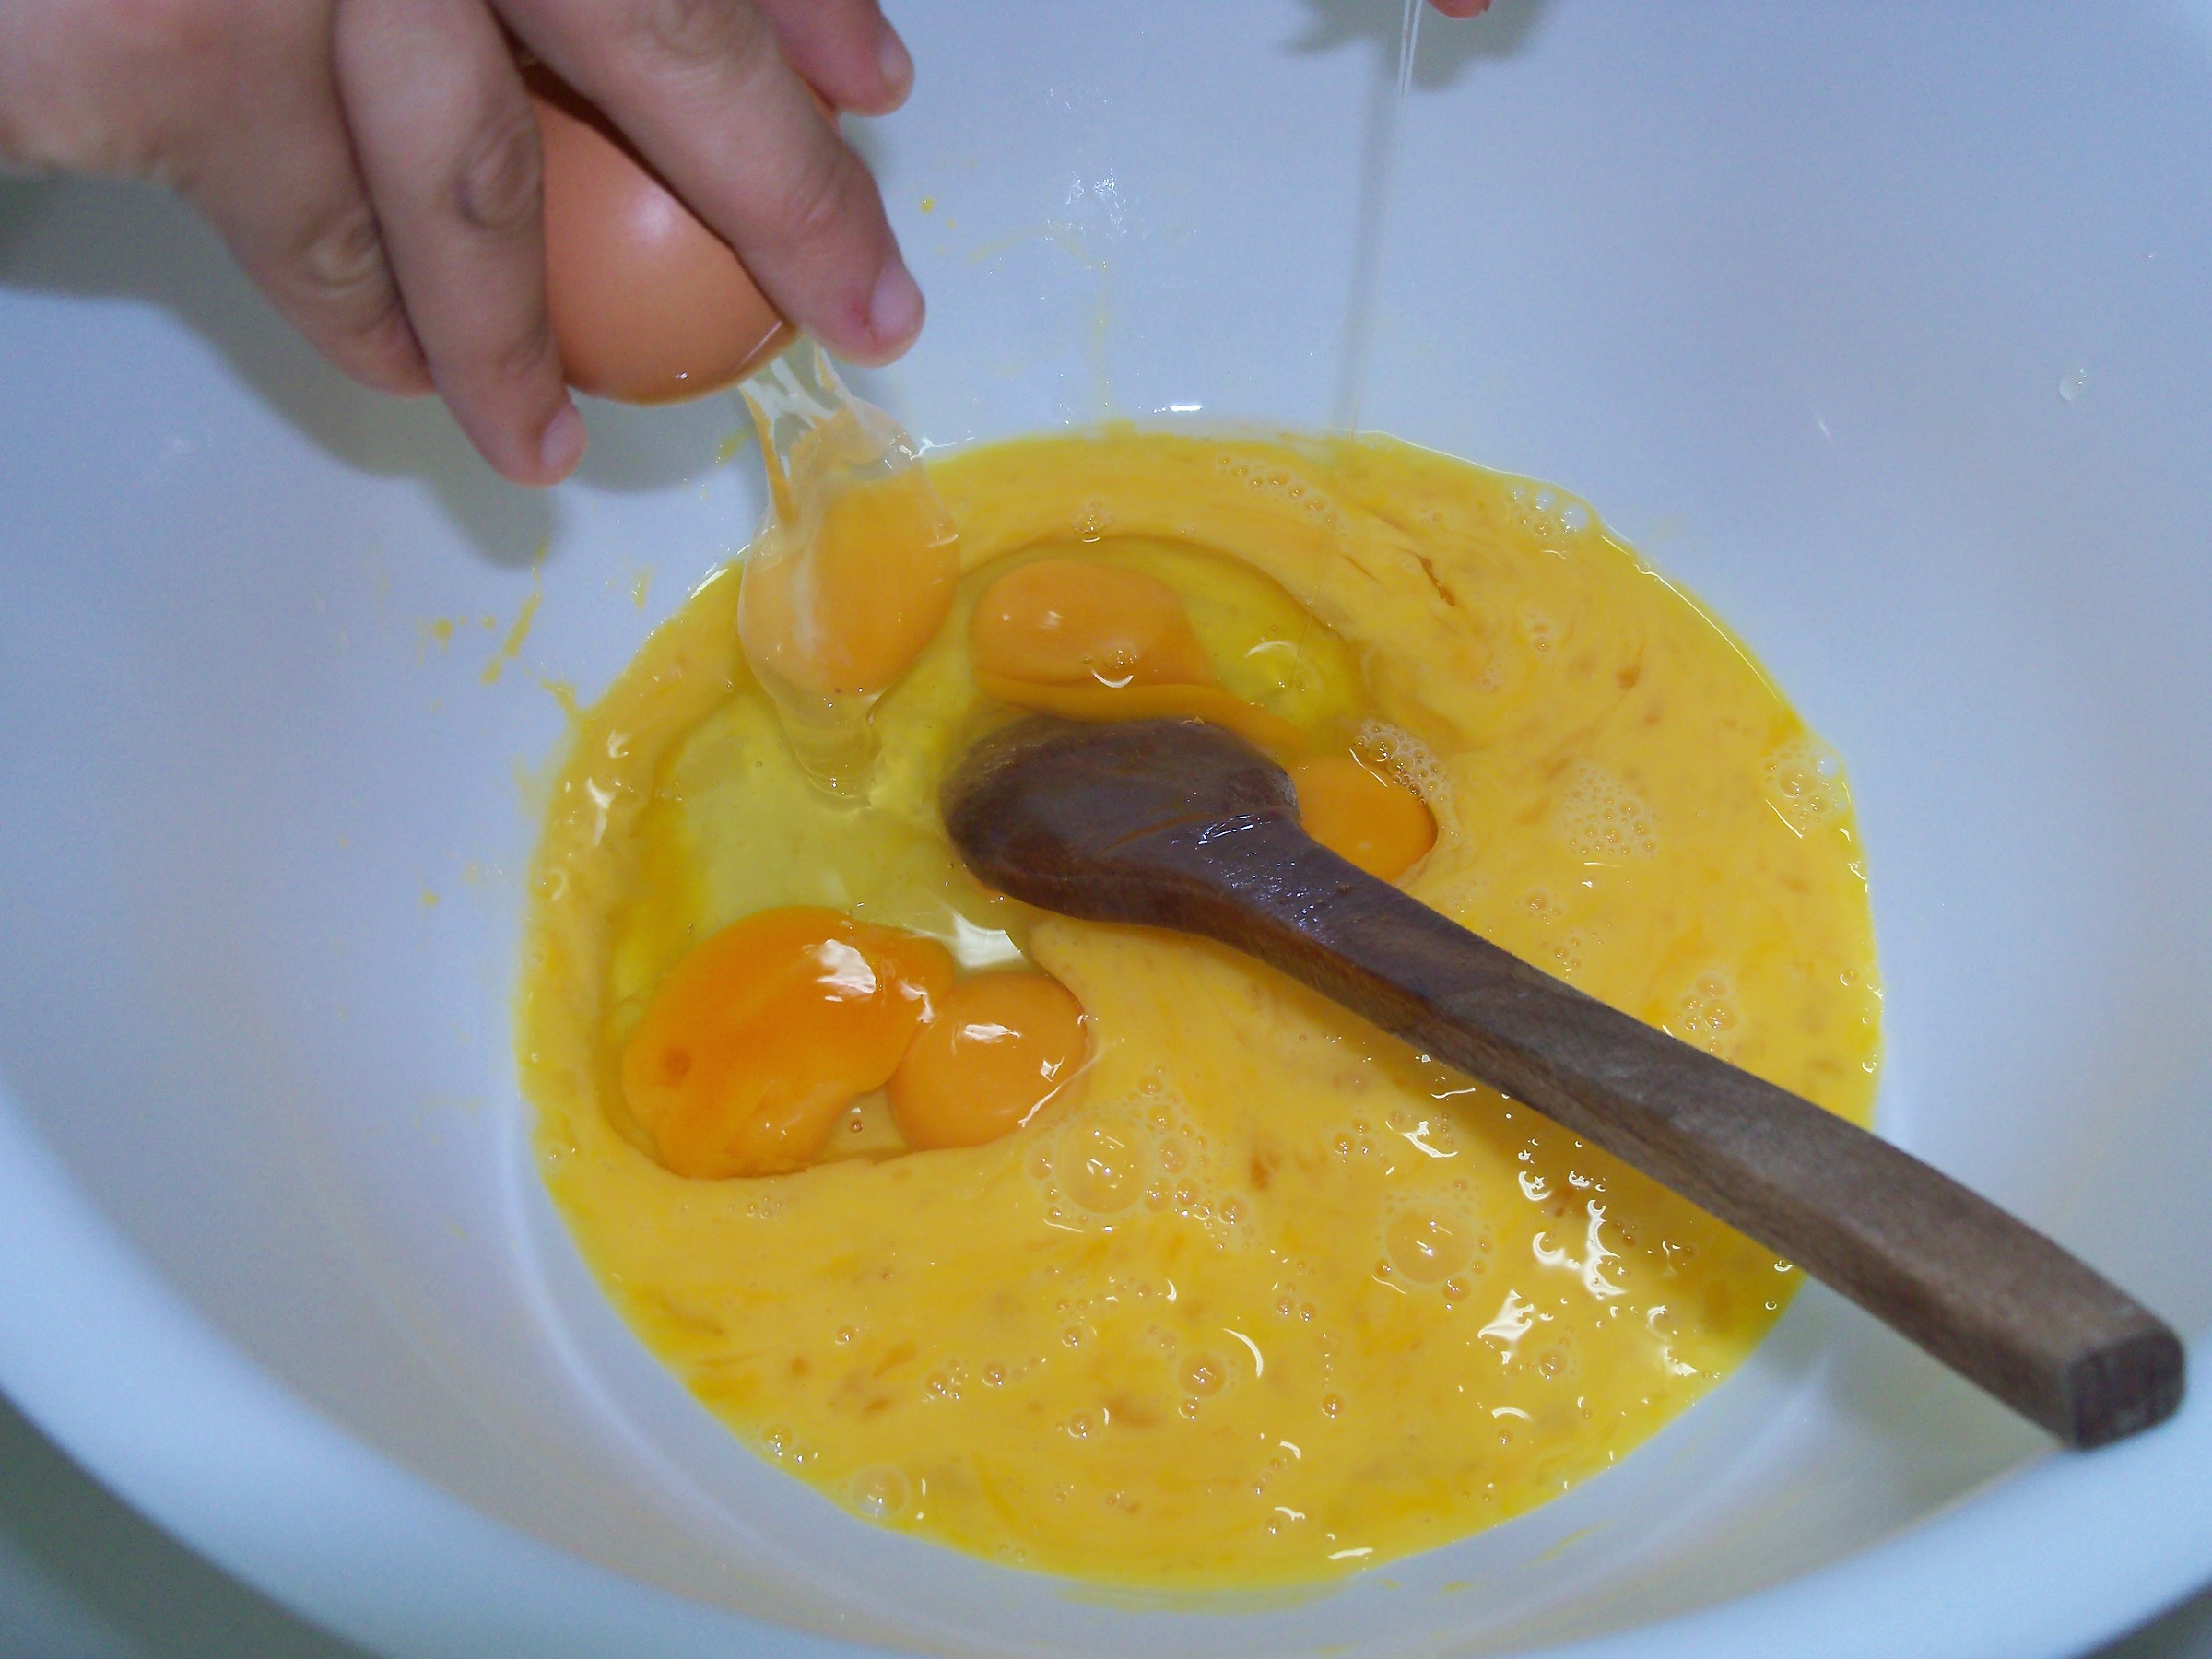 We make an omelette...